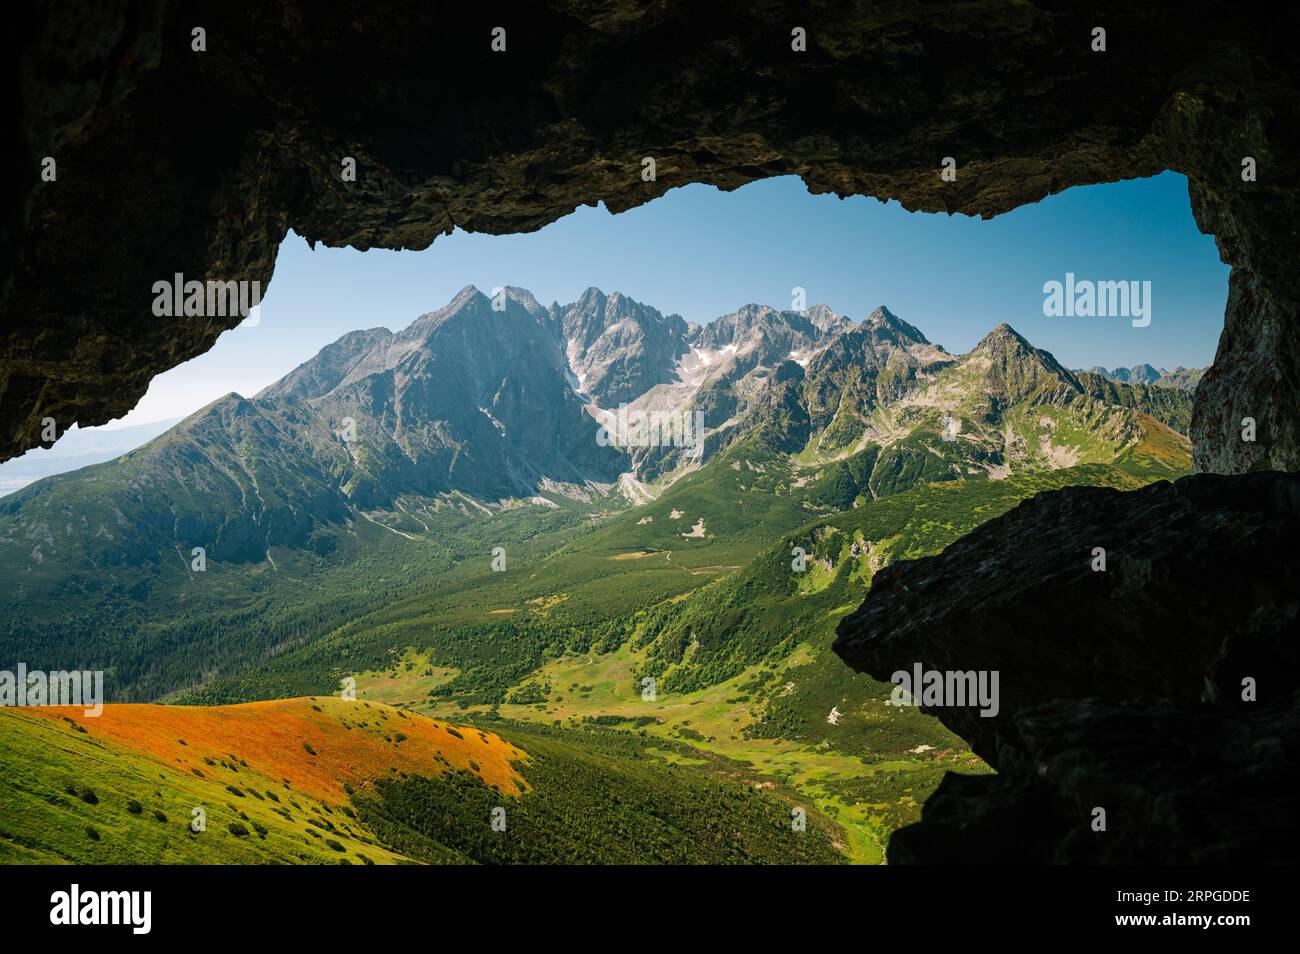 Belleza de los Altos Tatras: Serenidad en el corazón de los Tatras de Belianske, donde la cresta esmeralda se encuentra con un valle adornado con ricos bosques verdes. Foto de stock